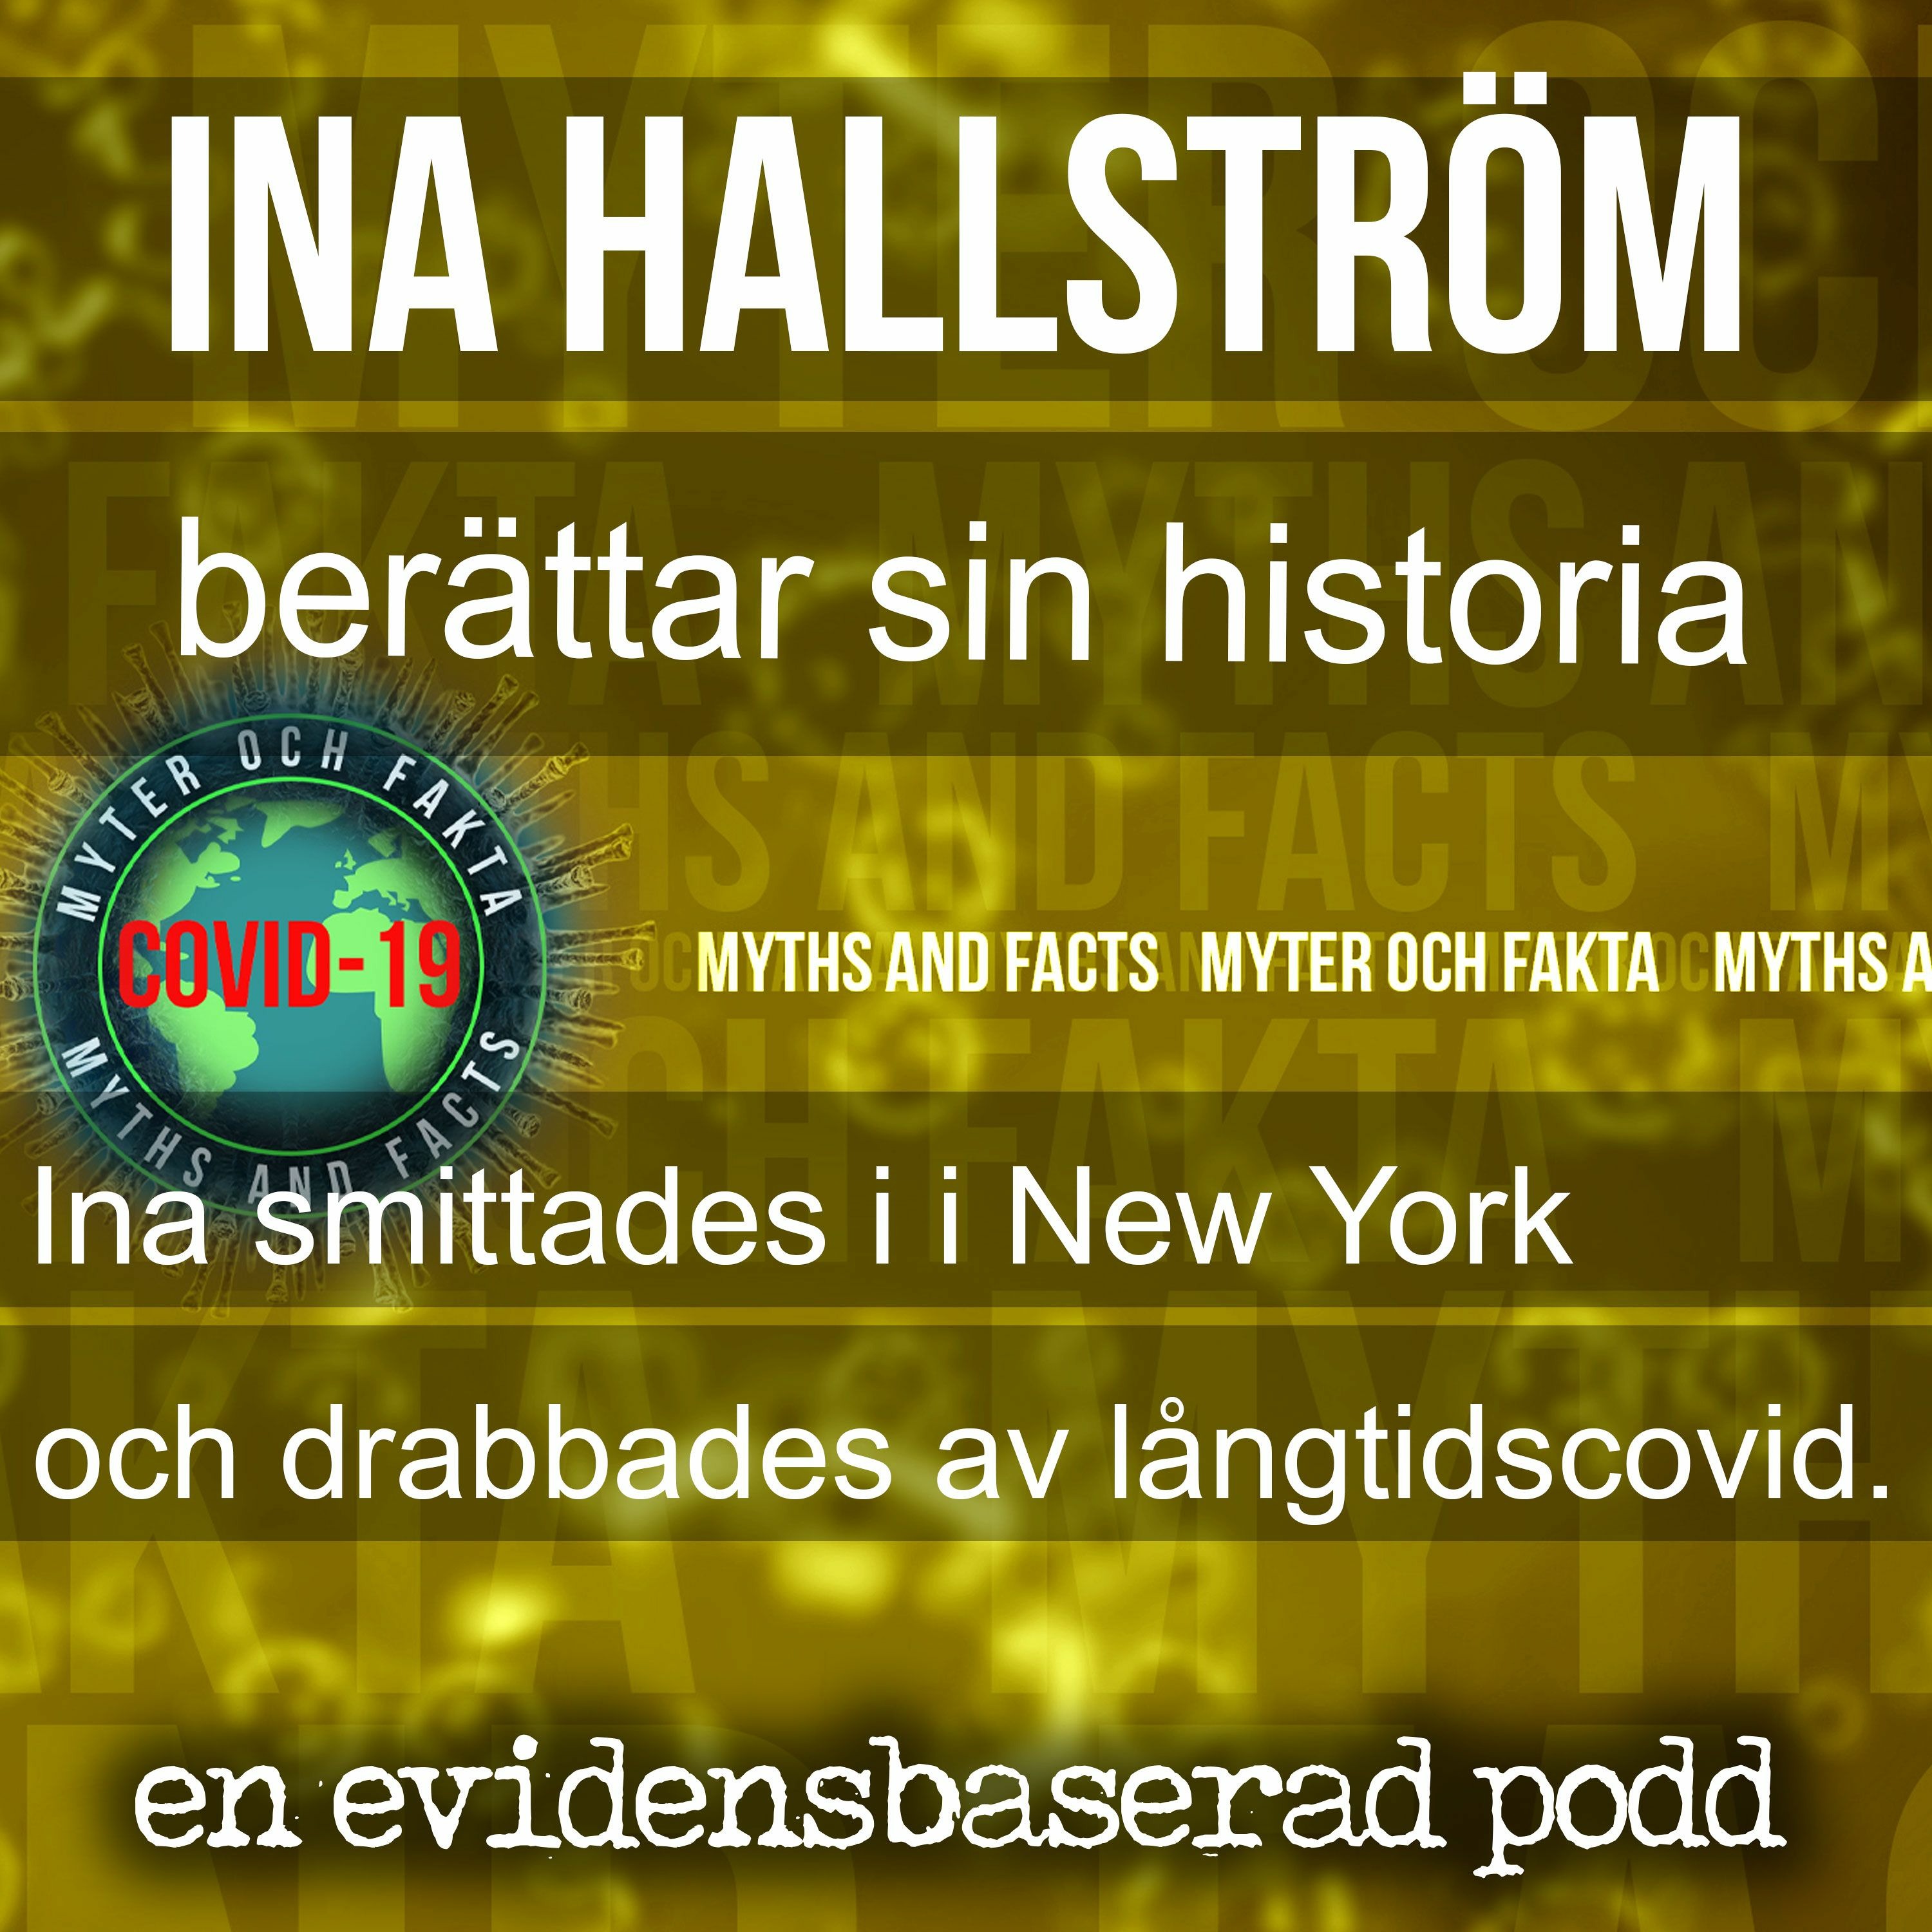 Långtidscovid – Ina Hallström berättar